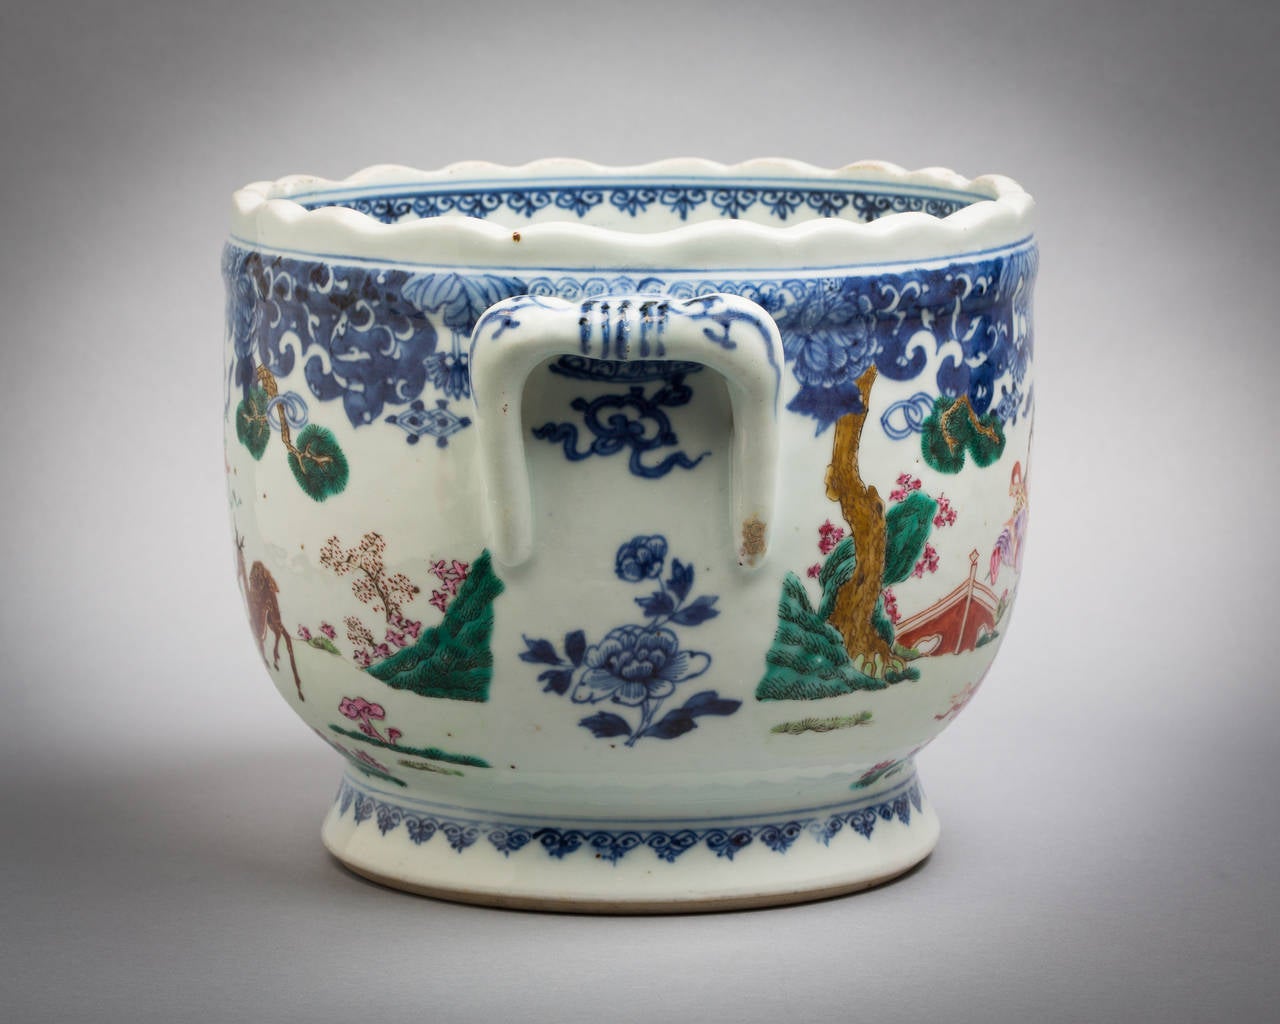 Chinese Export cachepot, circa 1775.